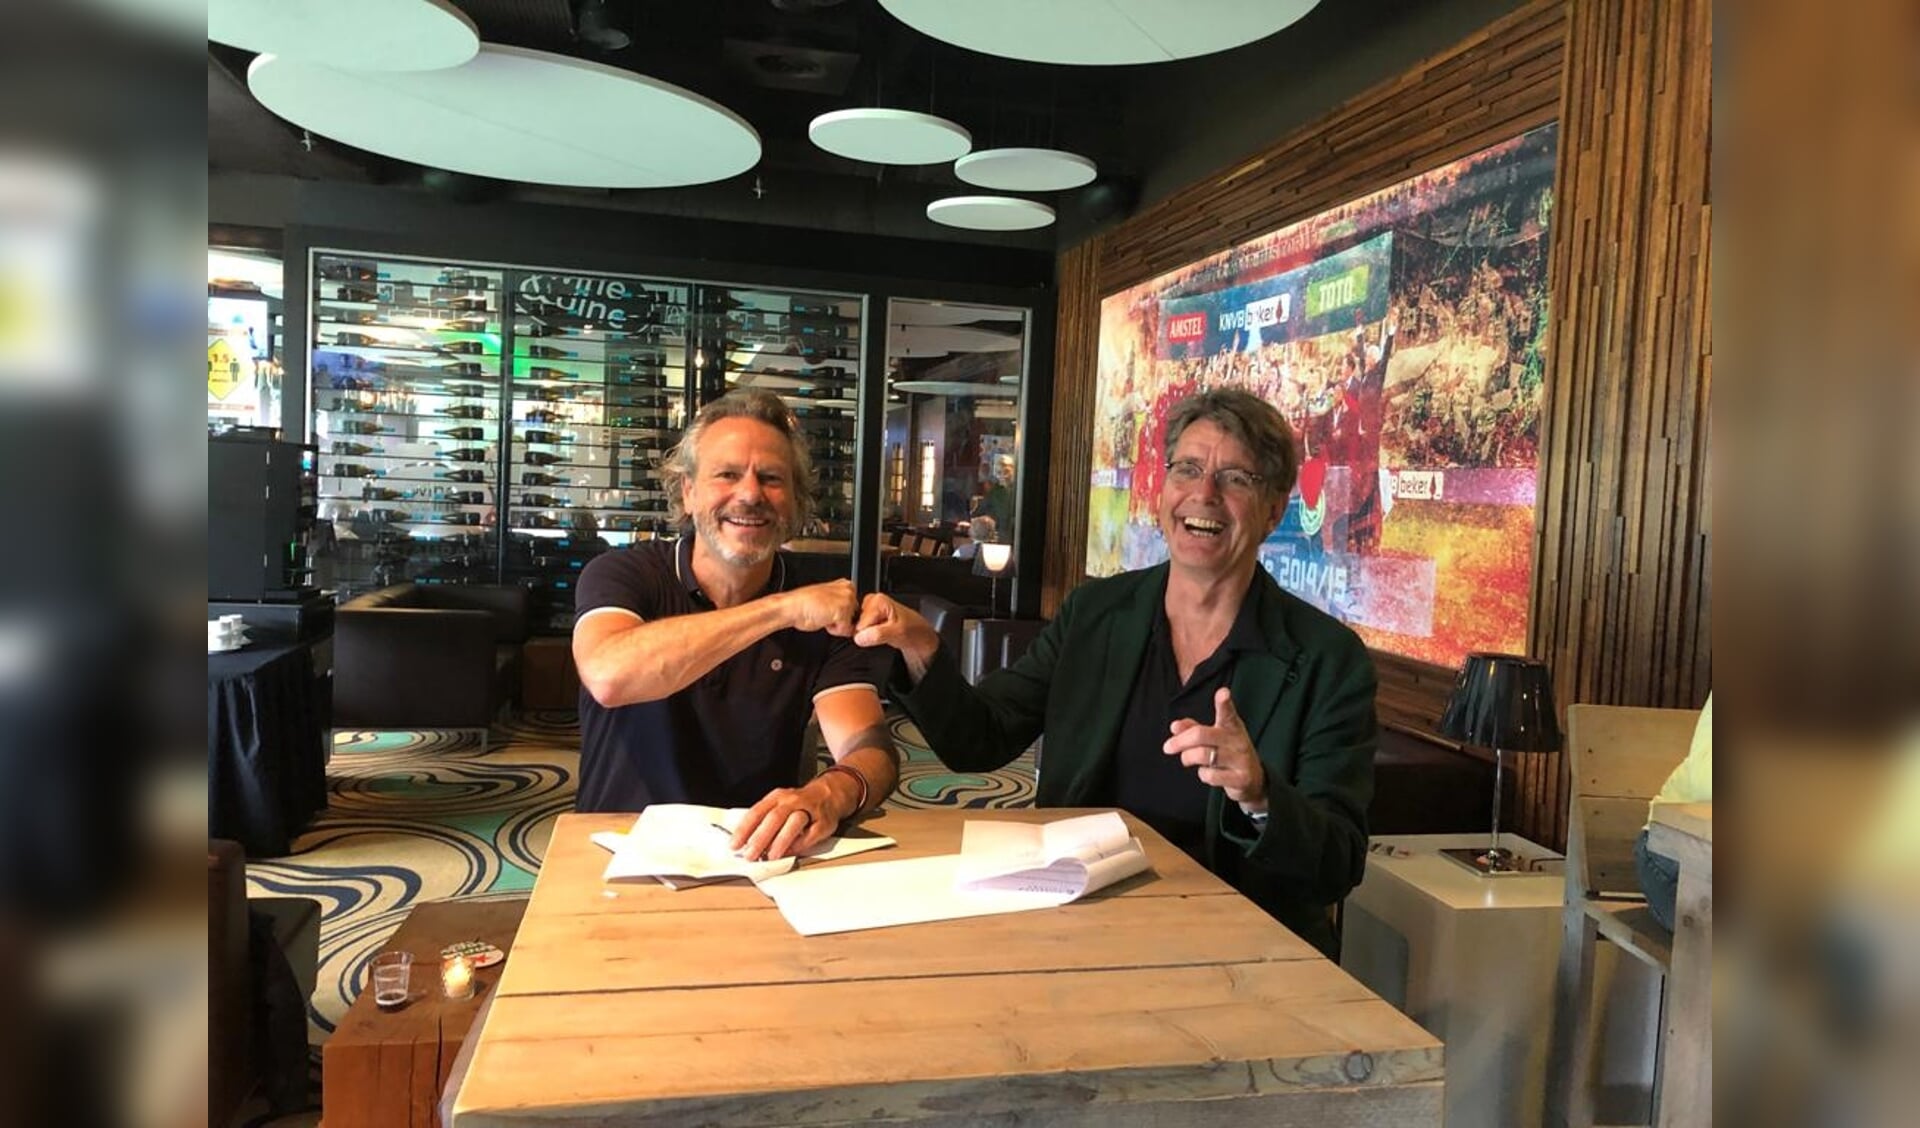 Bestuursvoorzitters Carlo Segers (Friesland College) en Wim van de Pol (Noorderpoort) ondertekenen de samenwerkingsovereenkomst.